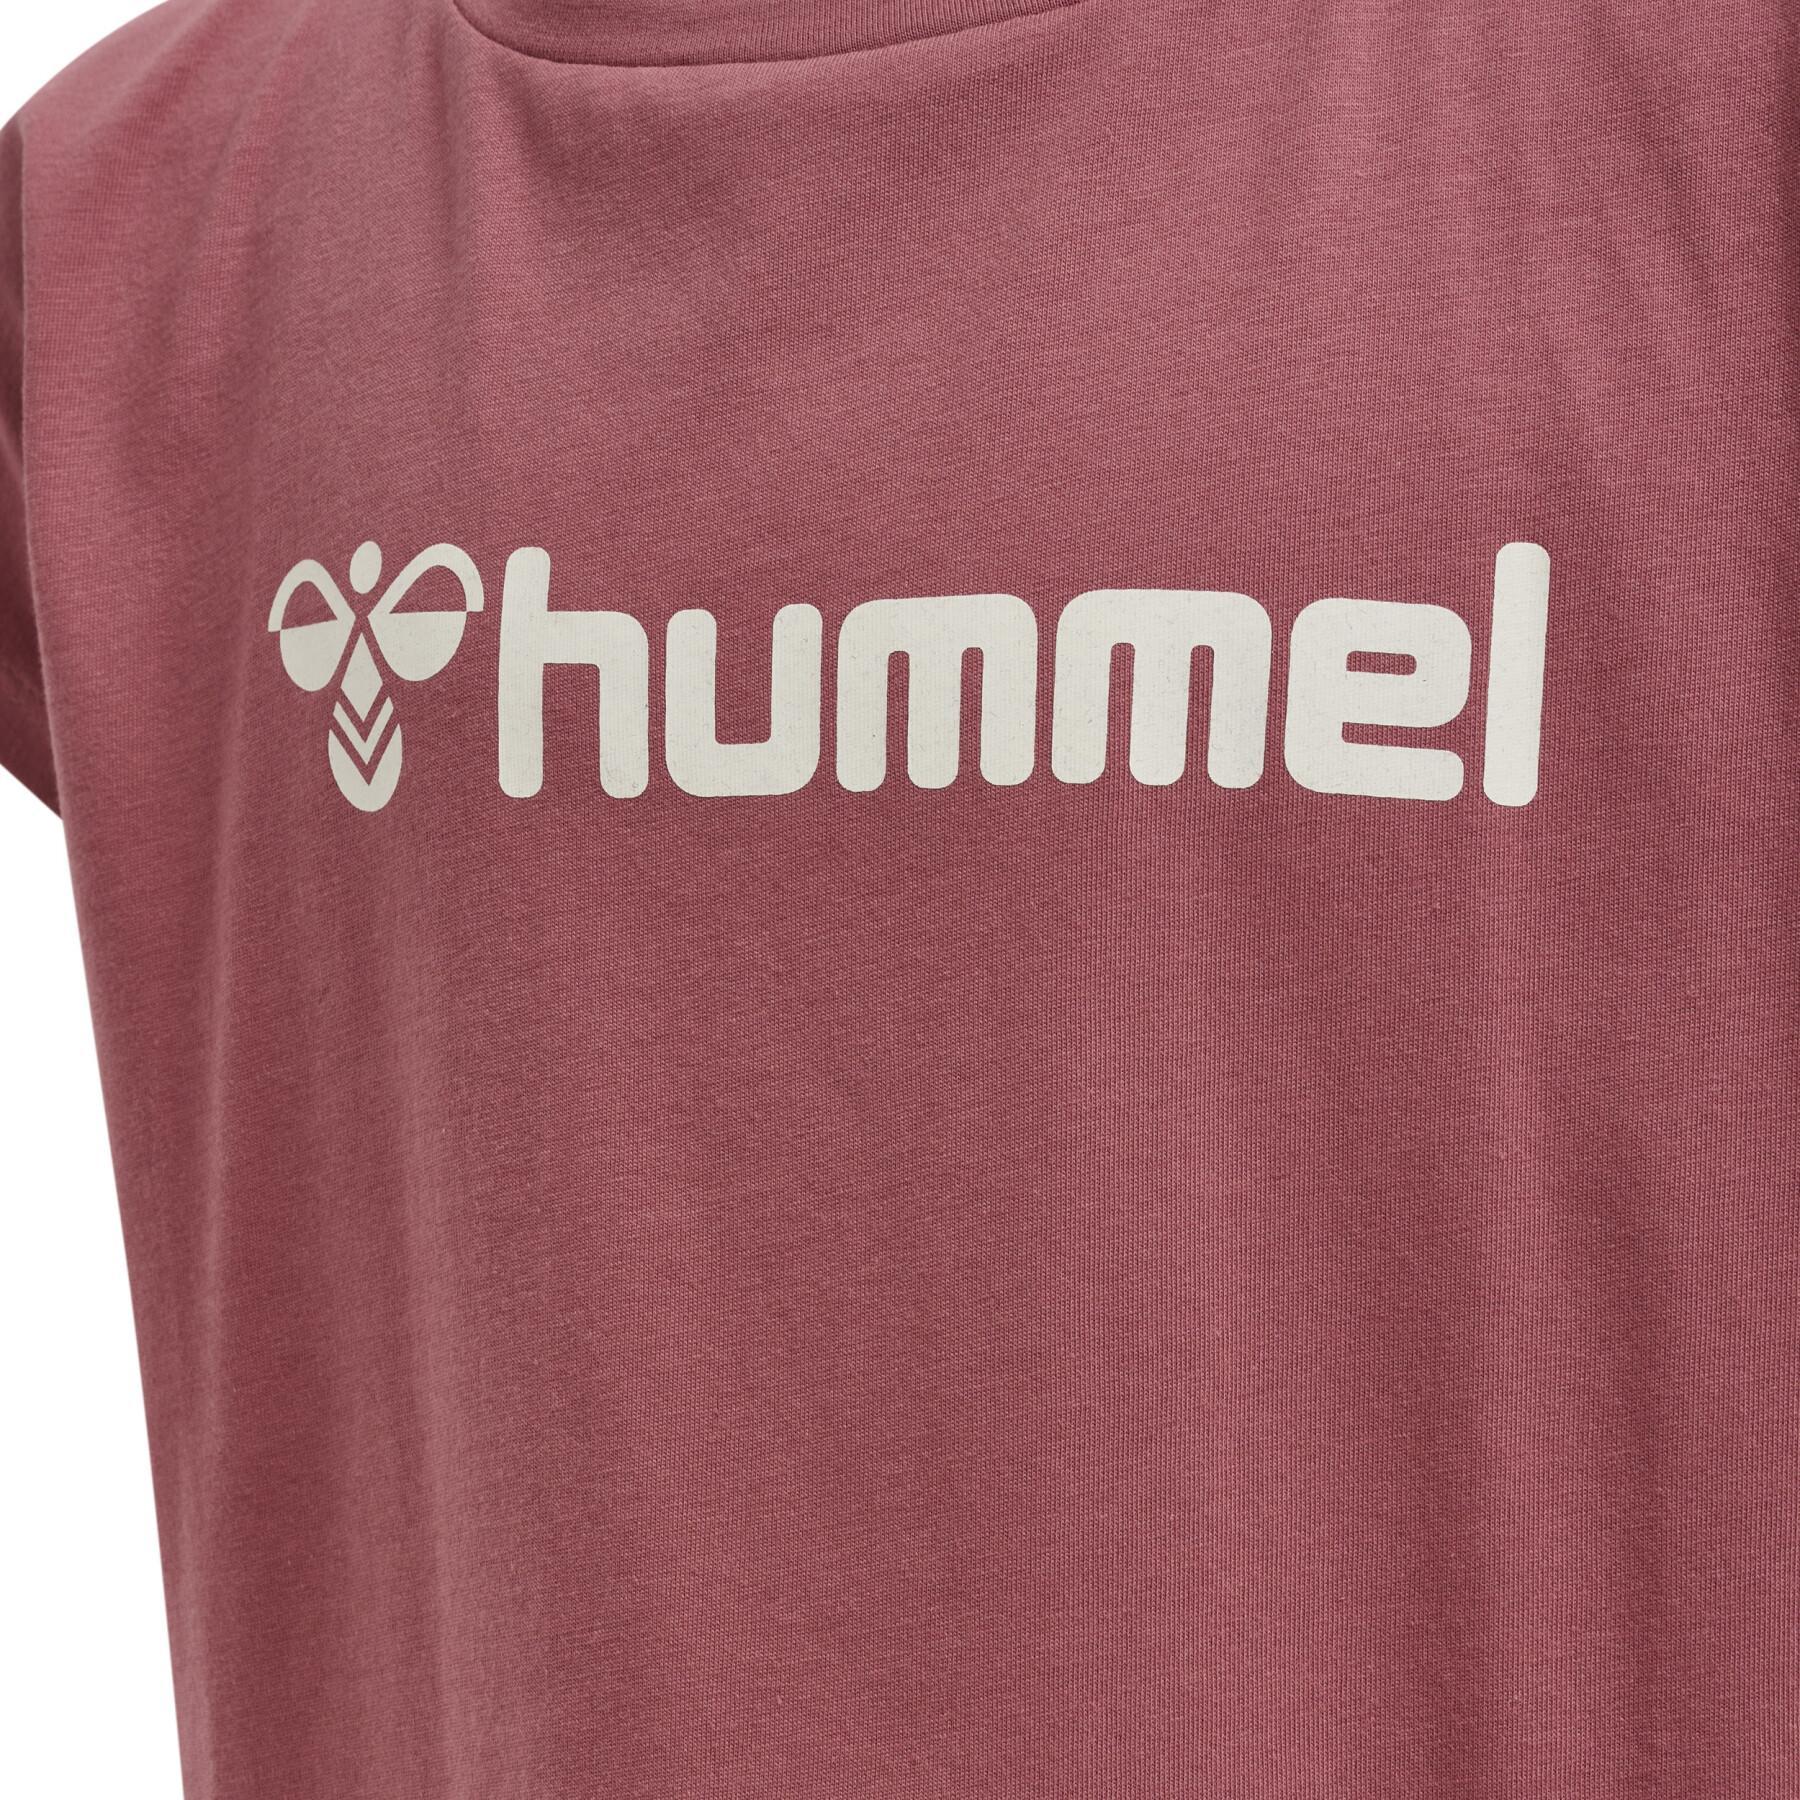 Set meisjes t-shirt en shorts Hummel Nova